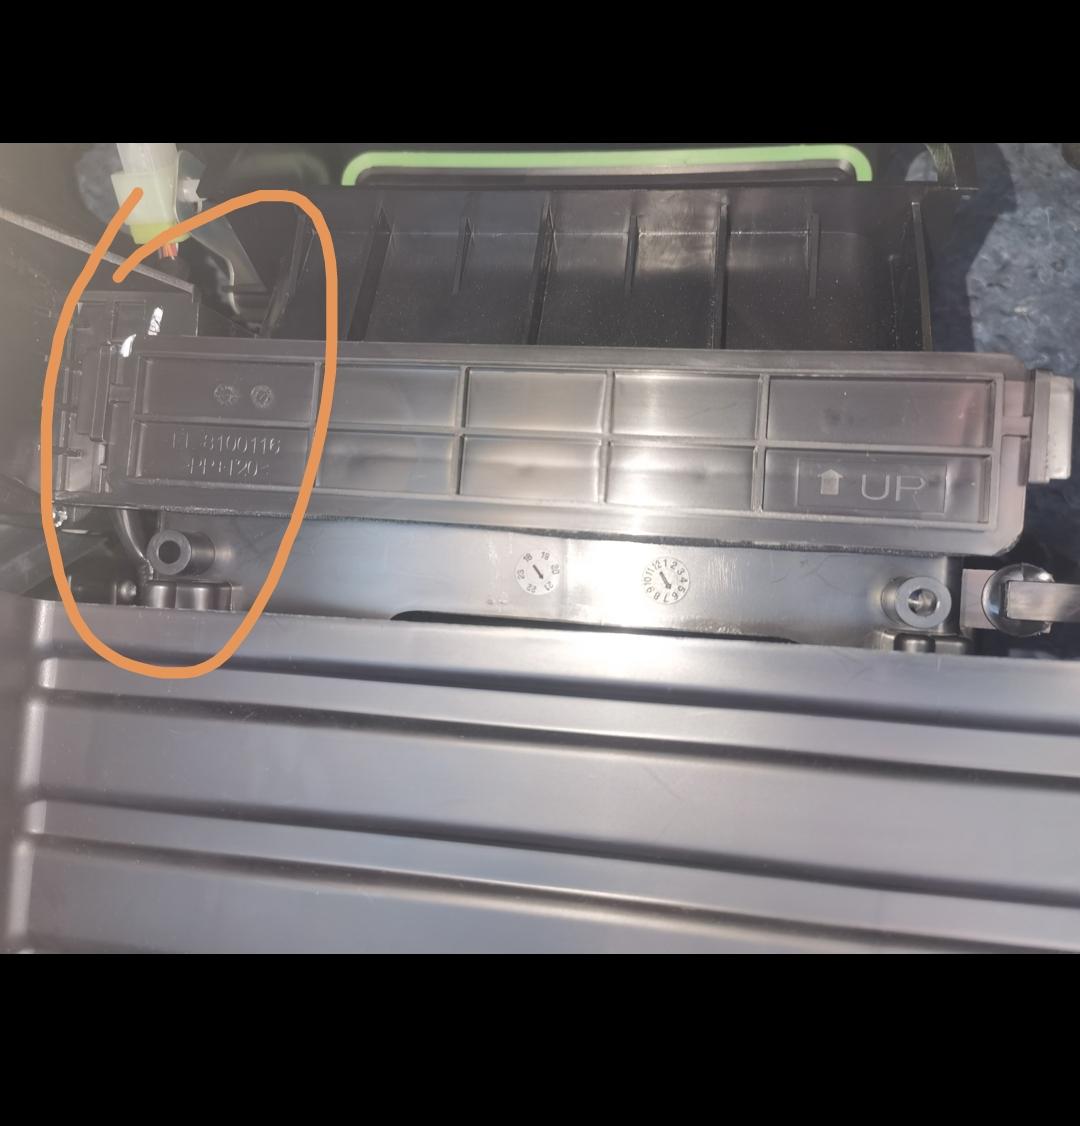 比亚迪e2 求助 求助！更换空调滤芯 ，手套箱拆下来了 ，但是里面那个滤芯盖子拆不下来 。如图左边打圈部分卡着拉不下来 